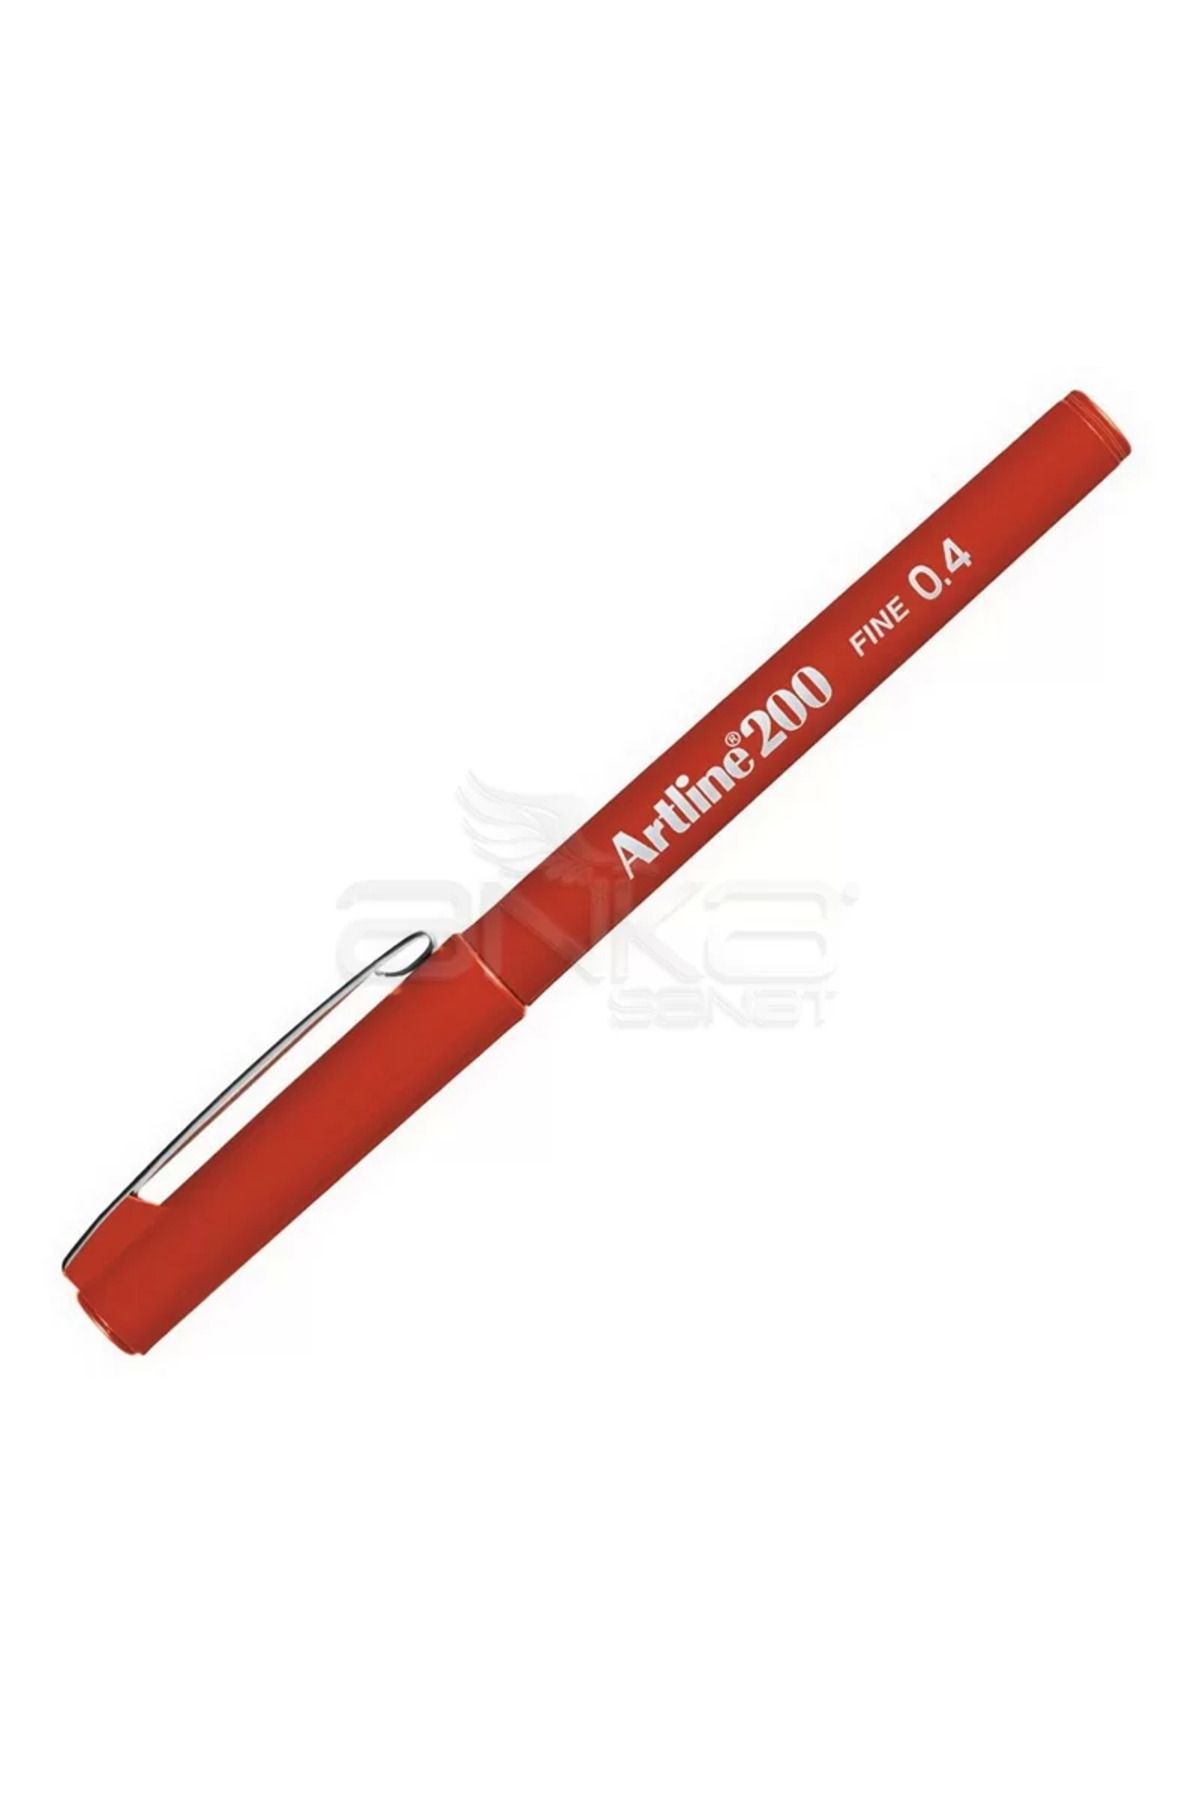 artline Fineliner 200 0.4mm Ince Uçlu Yazı Ve Çizim Kalemi Red